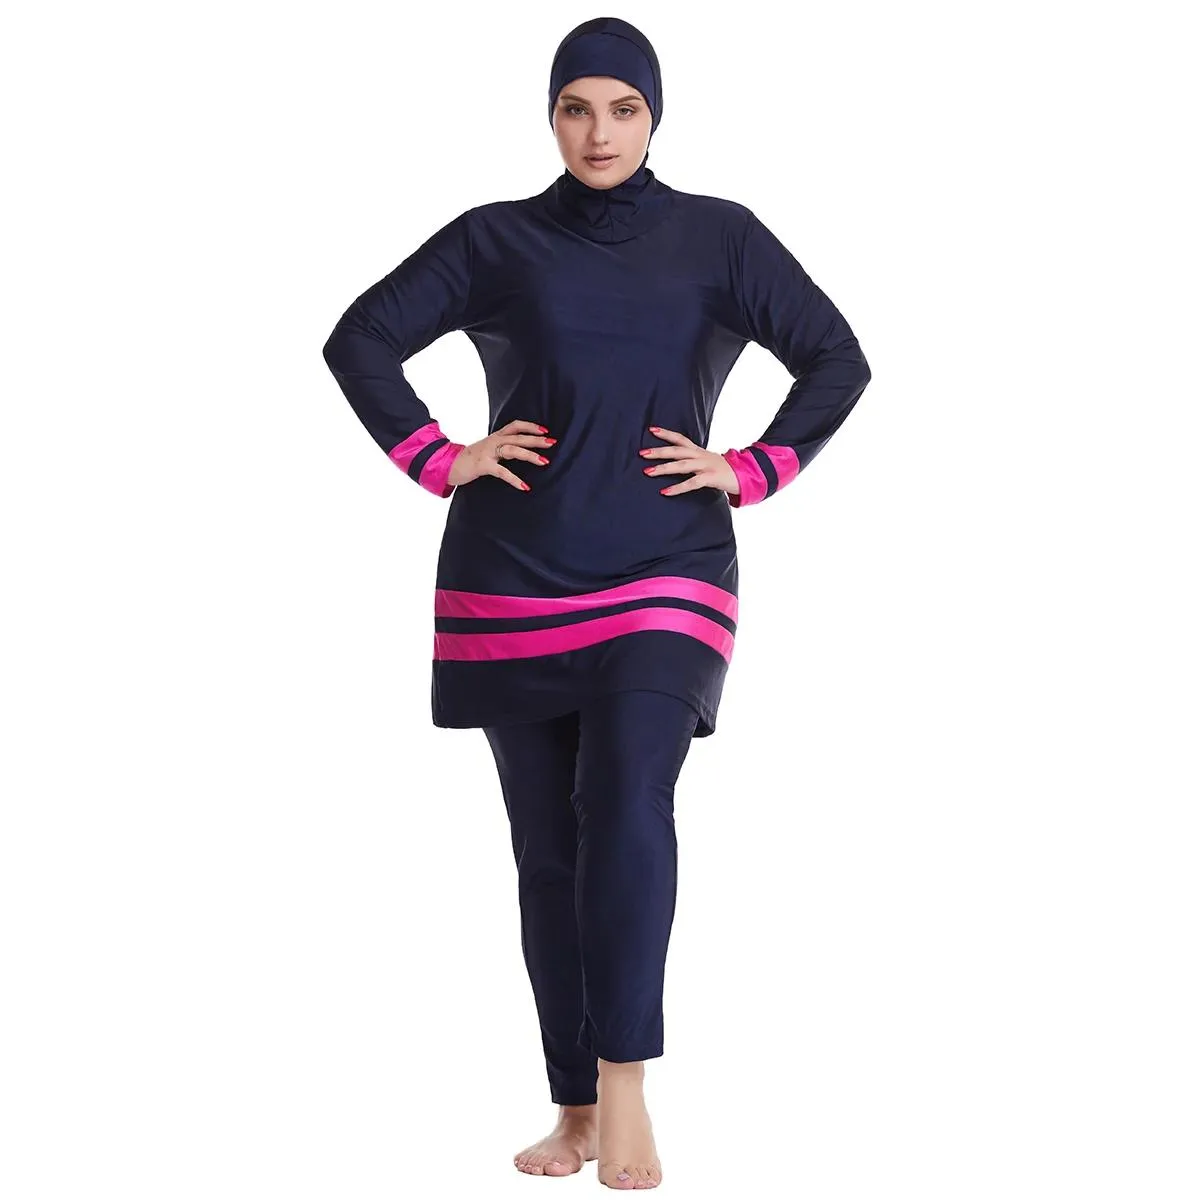 Set Burkini Costumi da bagno musulmani Costumi da bagno donna completamente coperti Hijab Manica lunga 3 pezzi Islamico Plus Size Immersioni Surf Nuoto Protezioni